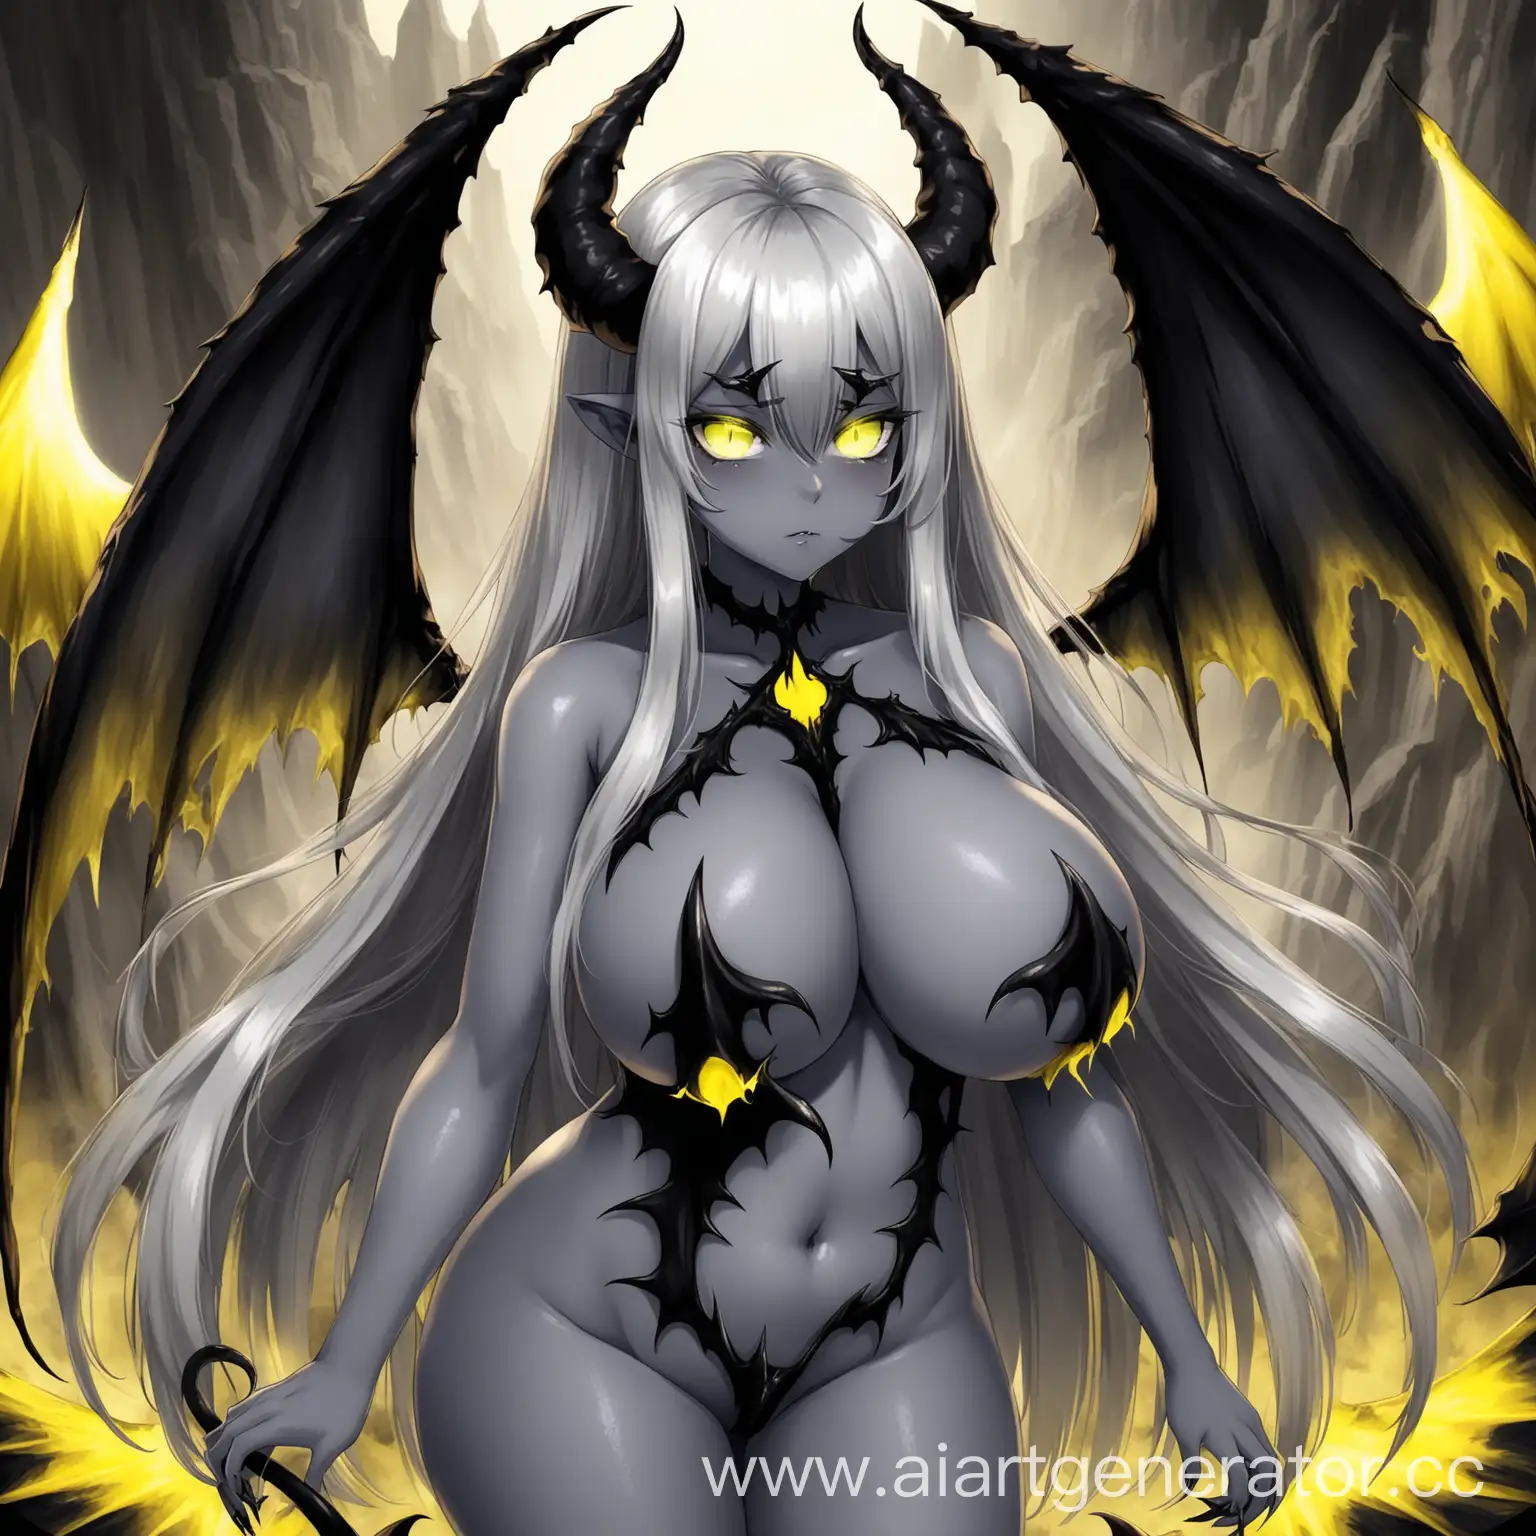 long hair, gray skin, sulfur eyes and wings, demon wings, demon tail, big boobs